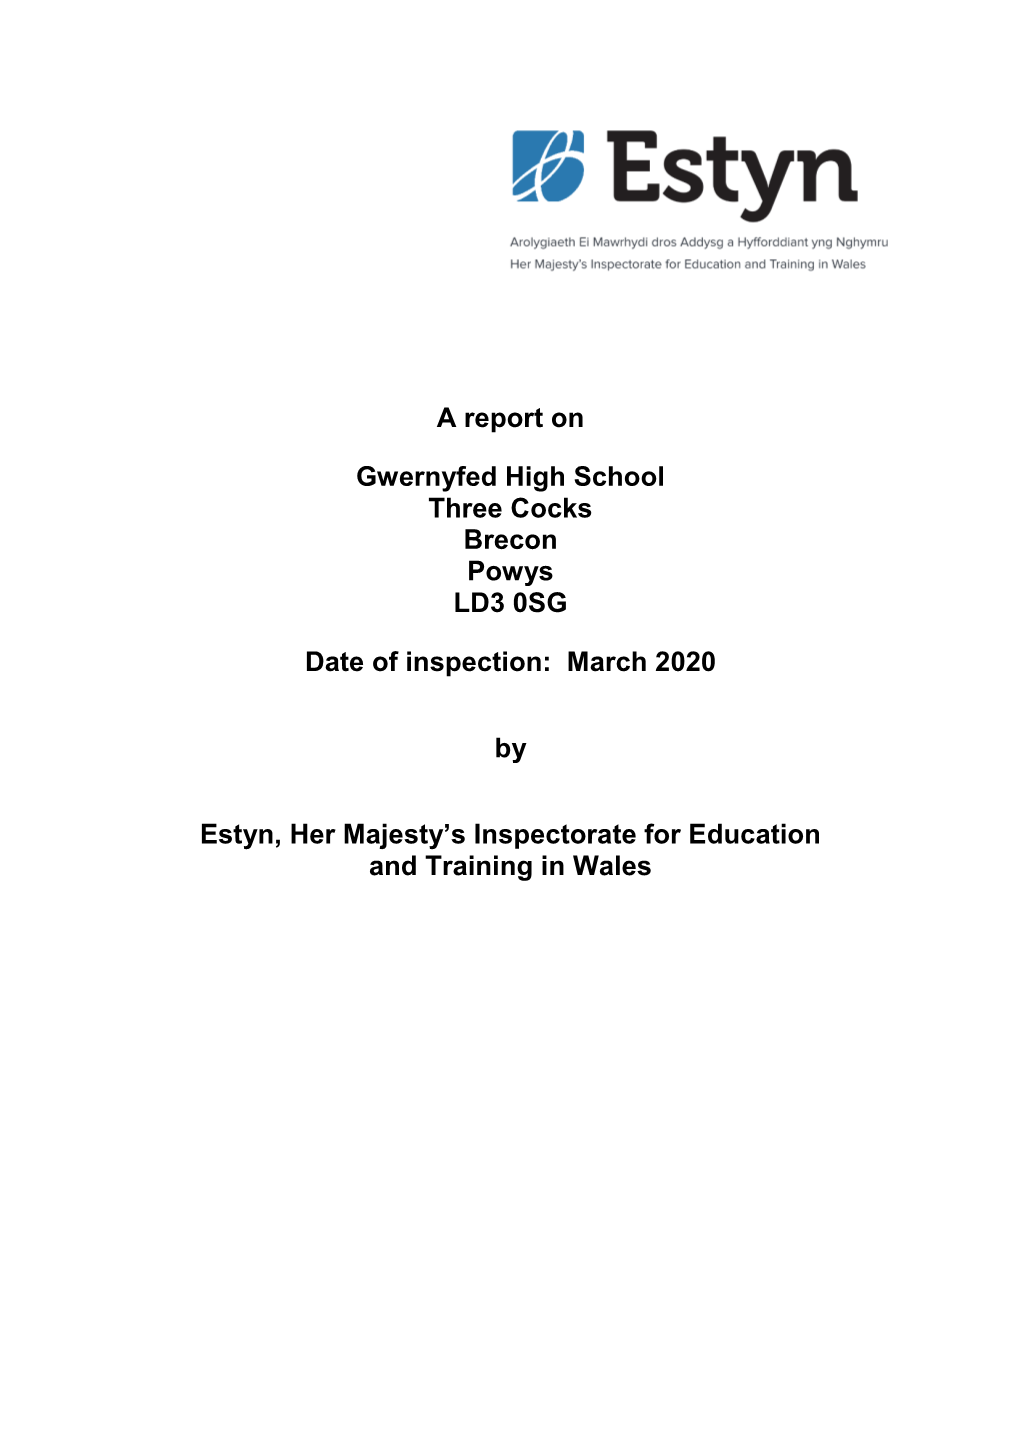 Inspection Report Gwernyfed High School 2020